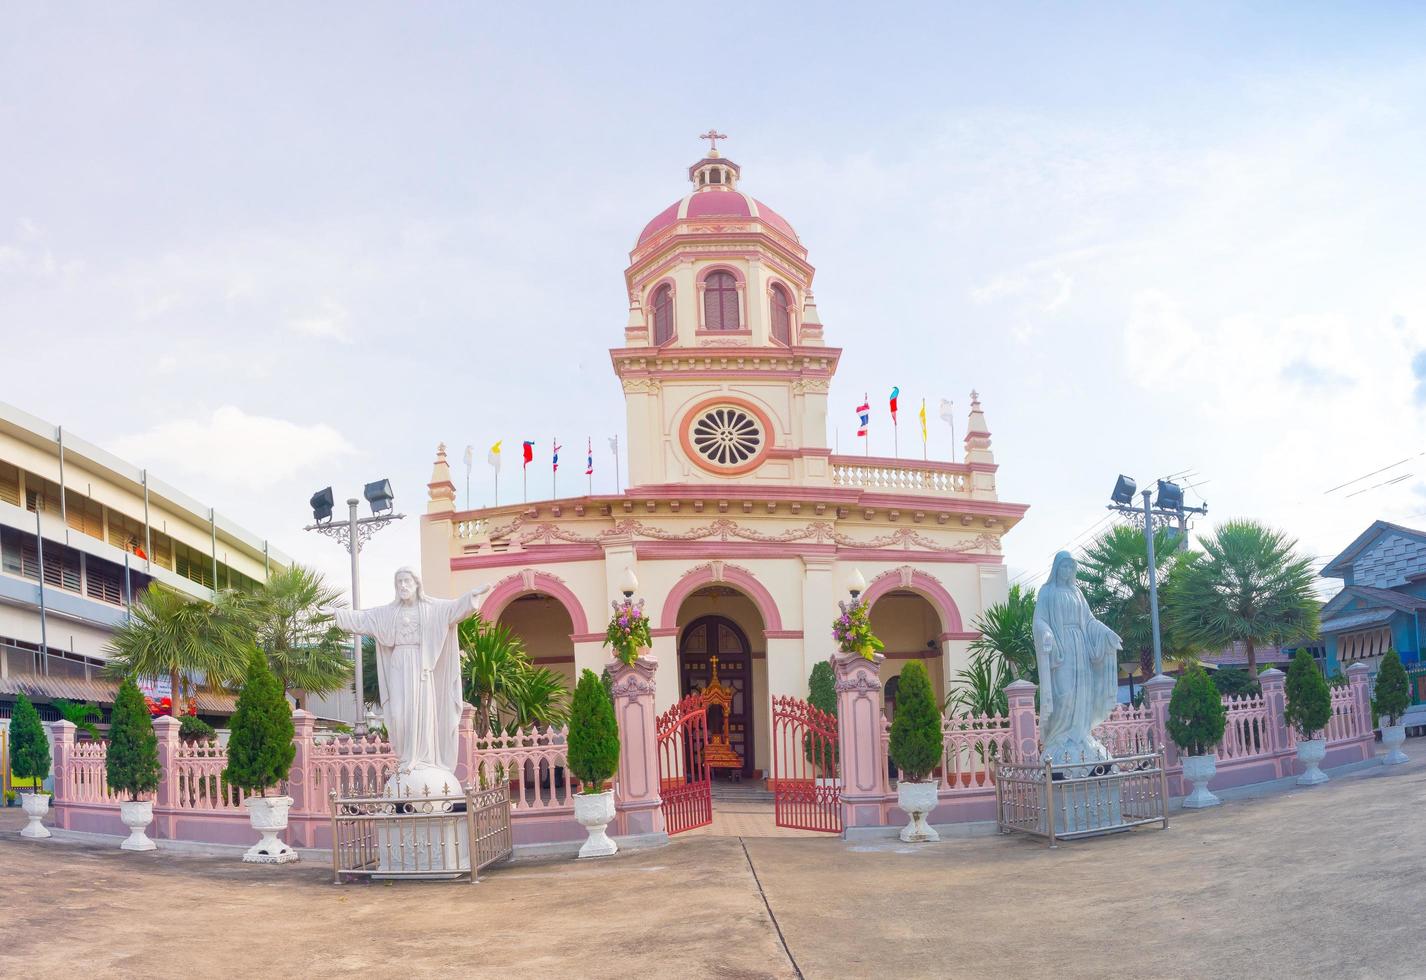 Bangkok, thailand. 2018 santa cruz kyrka också känd som kudi haka är en roman katolik kyrka på de väst Bank av chao phraya flod. foto